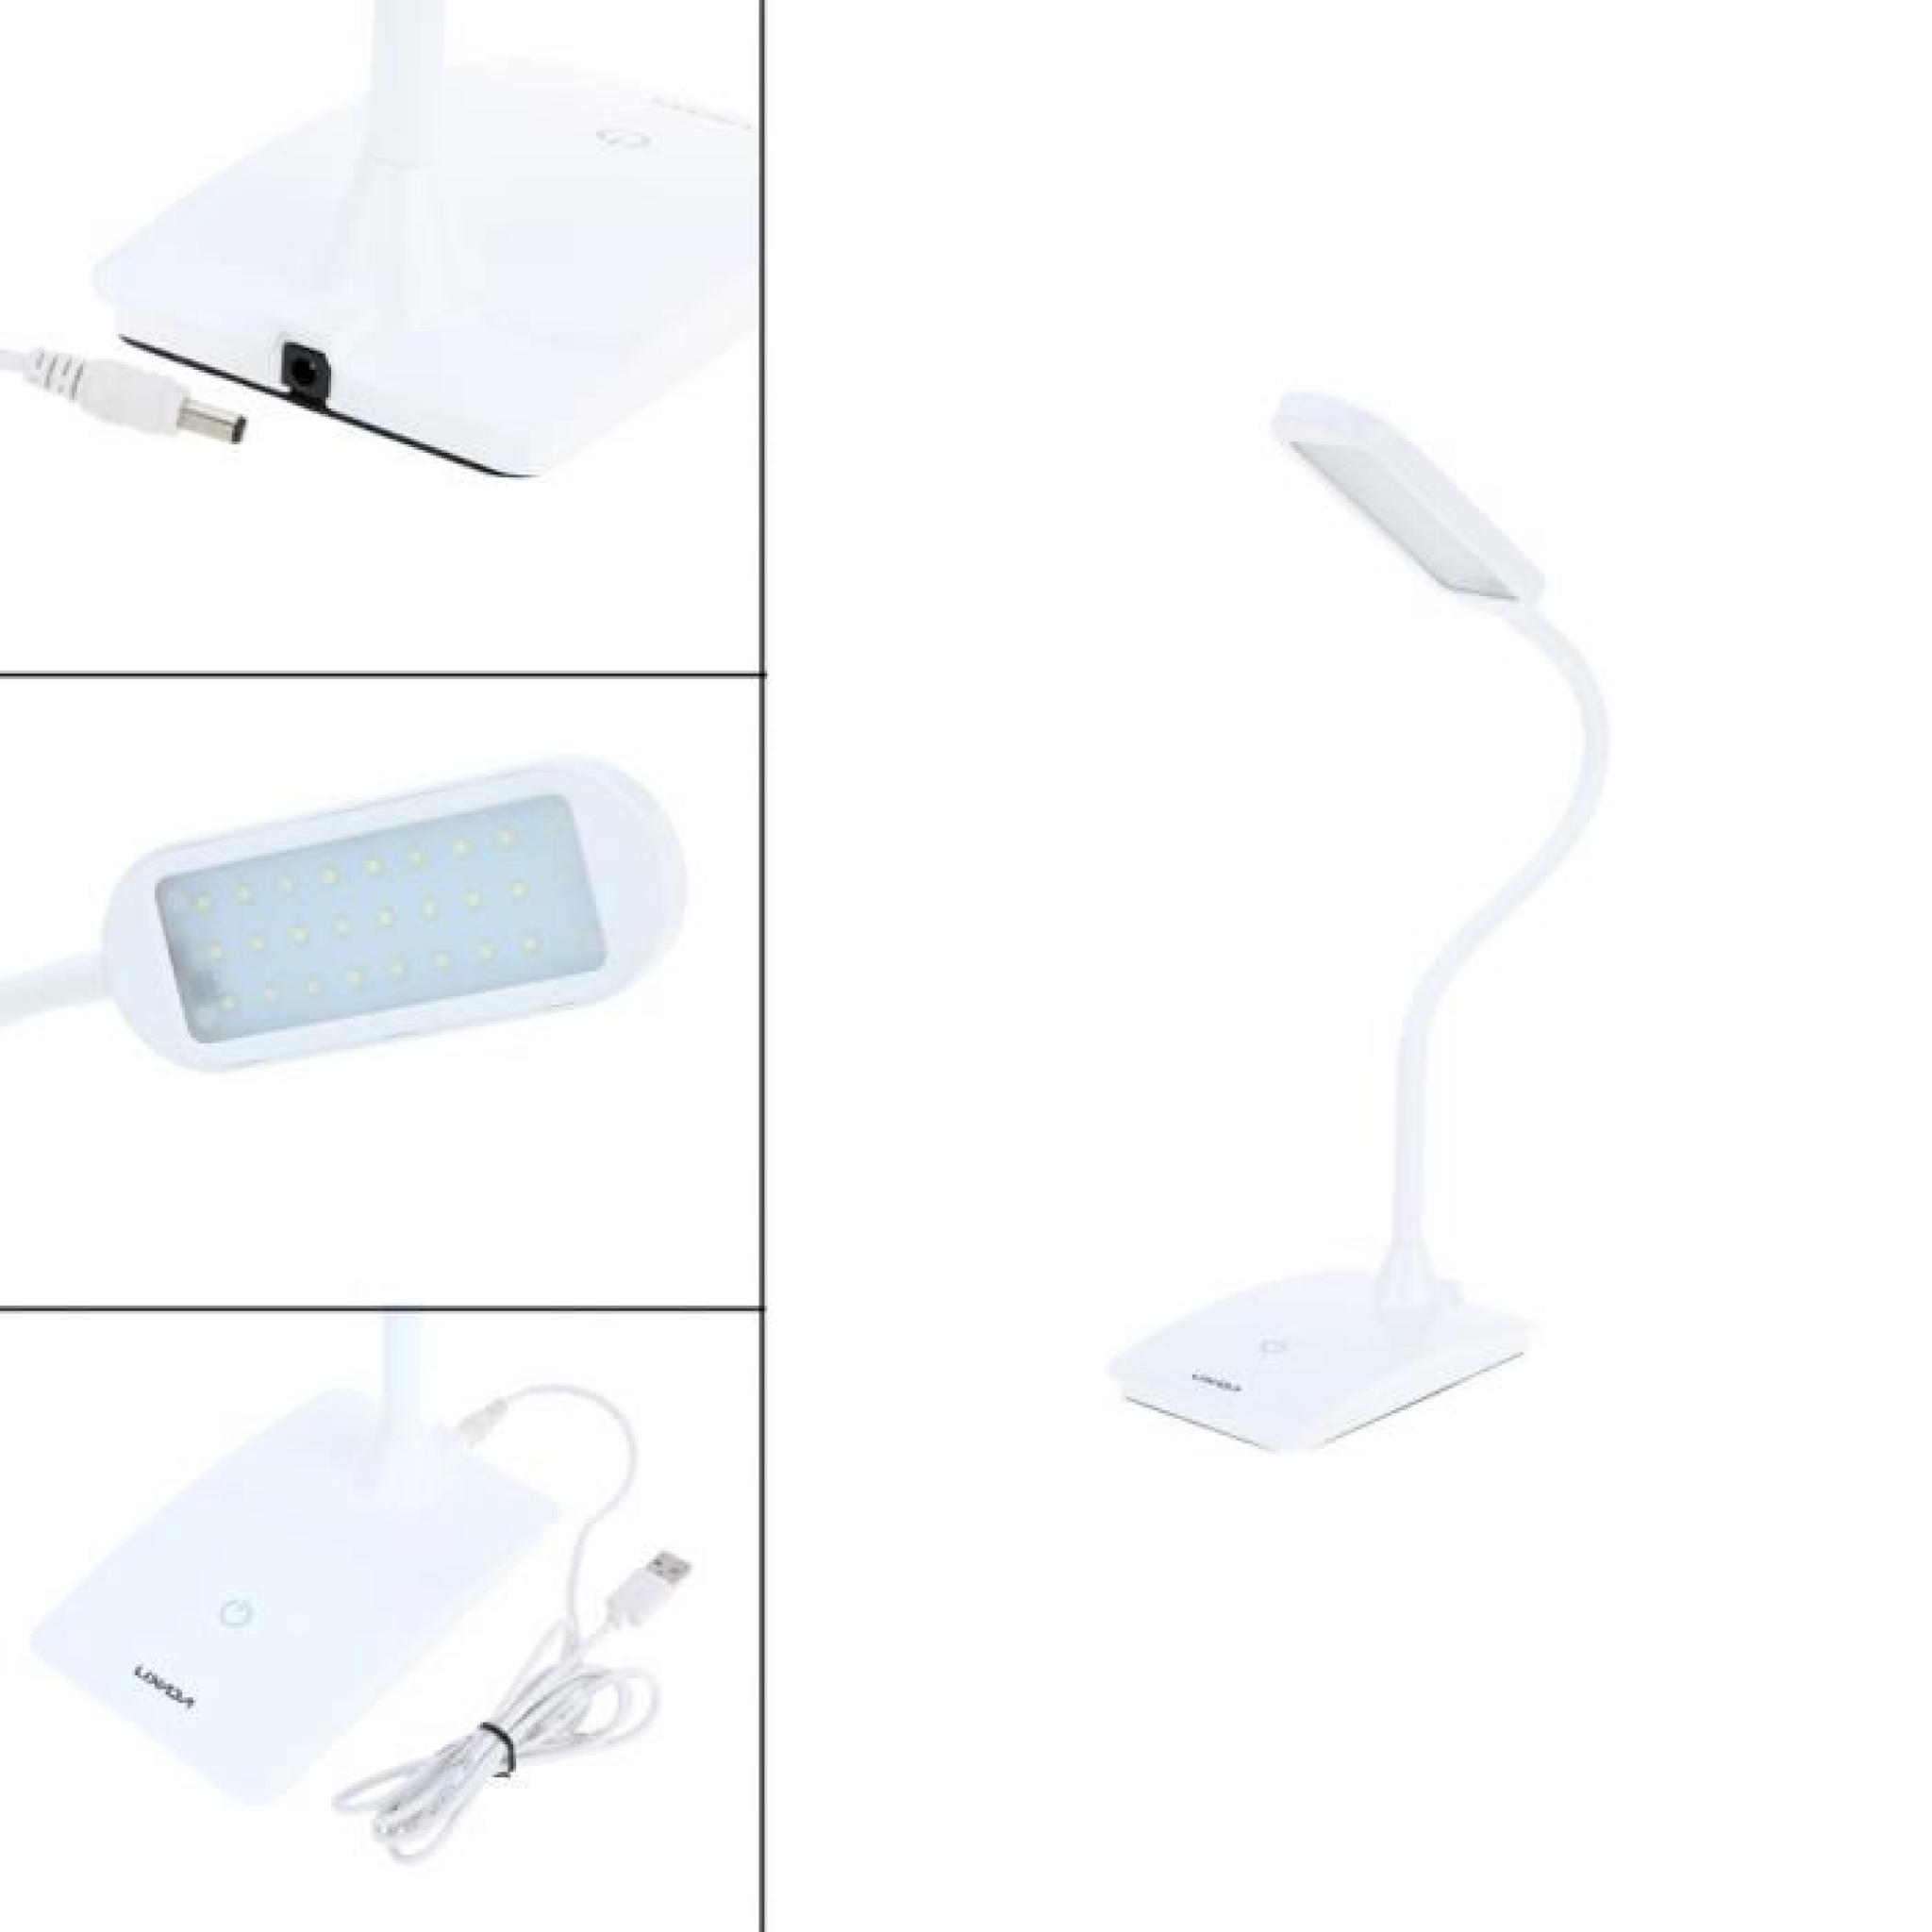  Lixada 6W rechargeable Commutateur tactile Lampe LED de lecture Protéger l'oeil luminosité réglable lampe de table pliable flexible pas cher